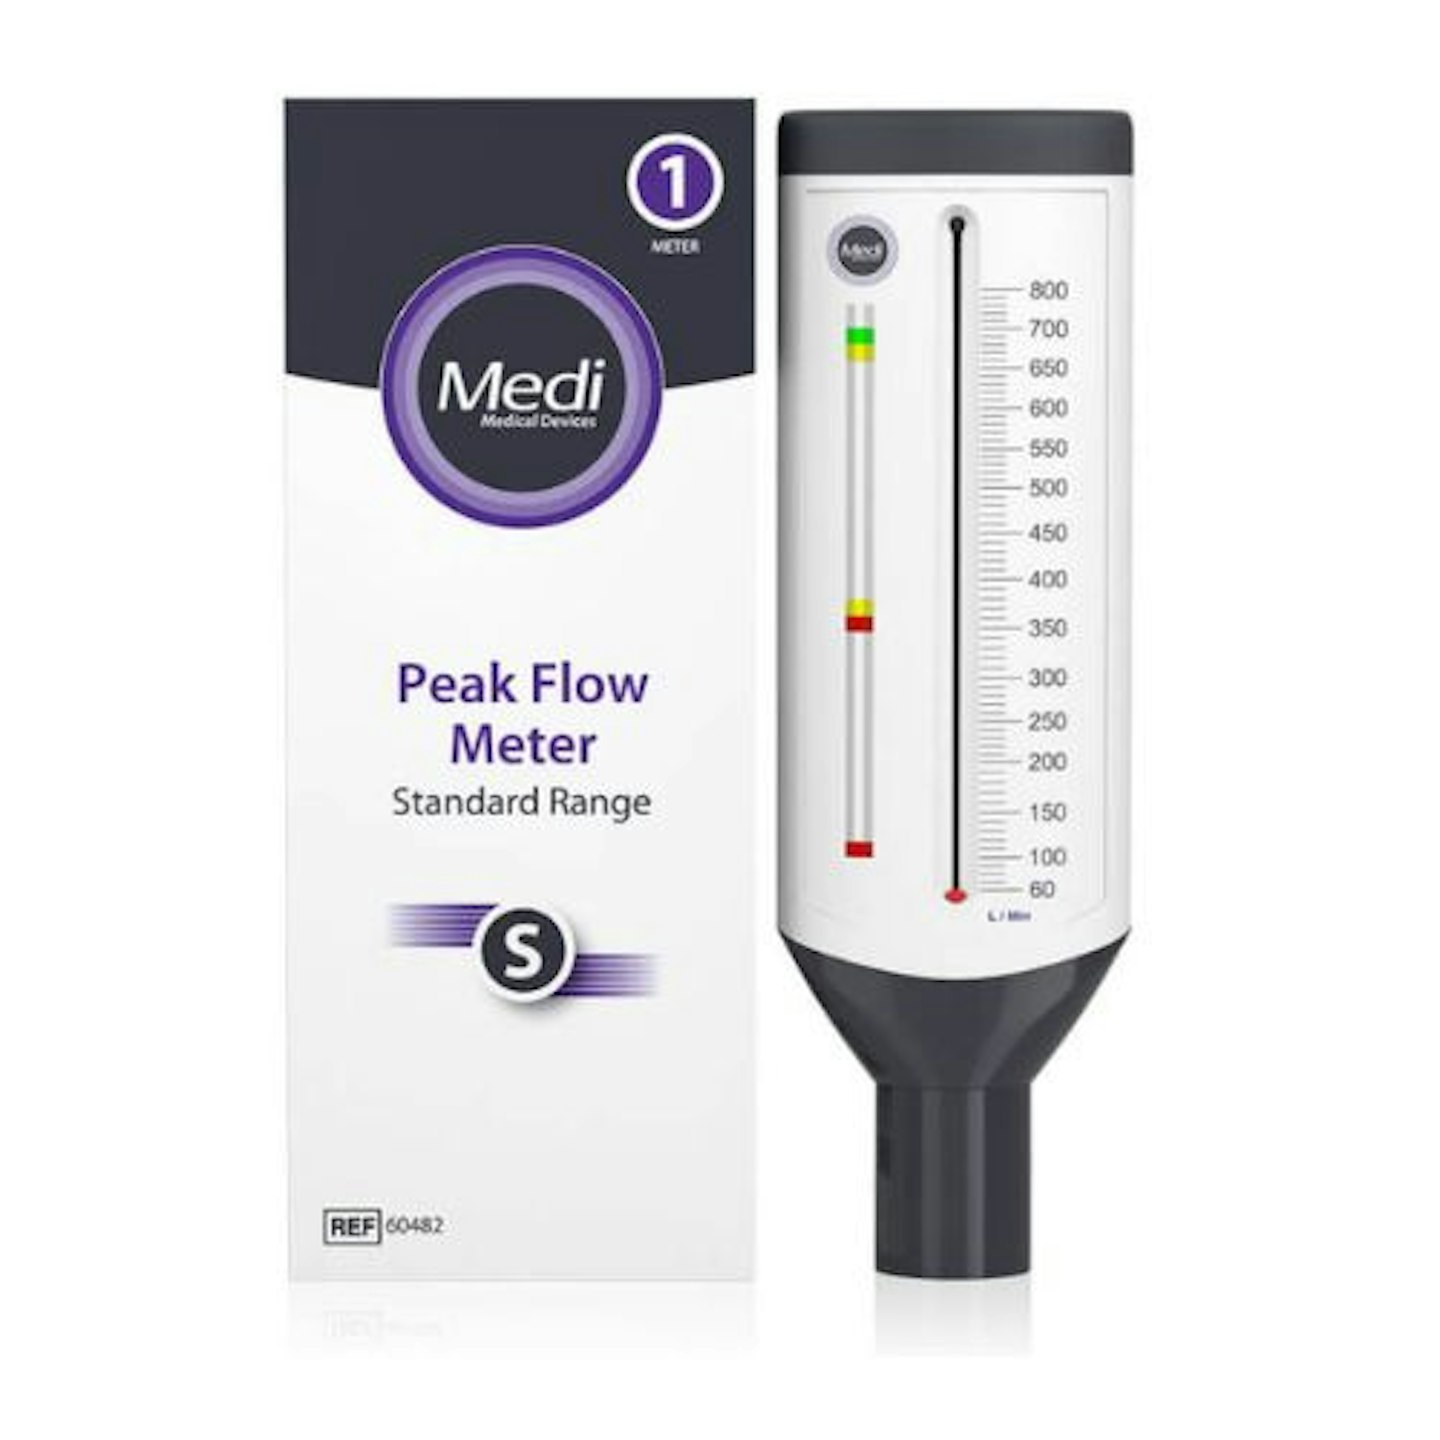 Medi Peak Flow Meter, Standard Range